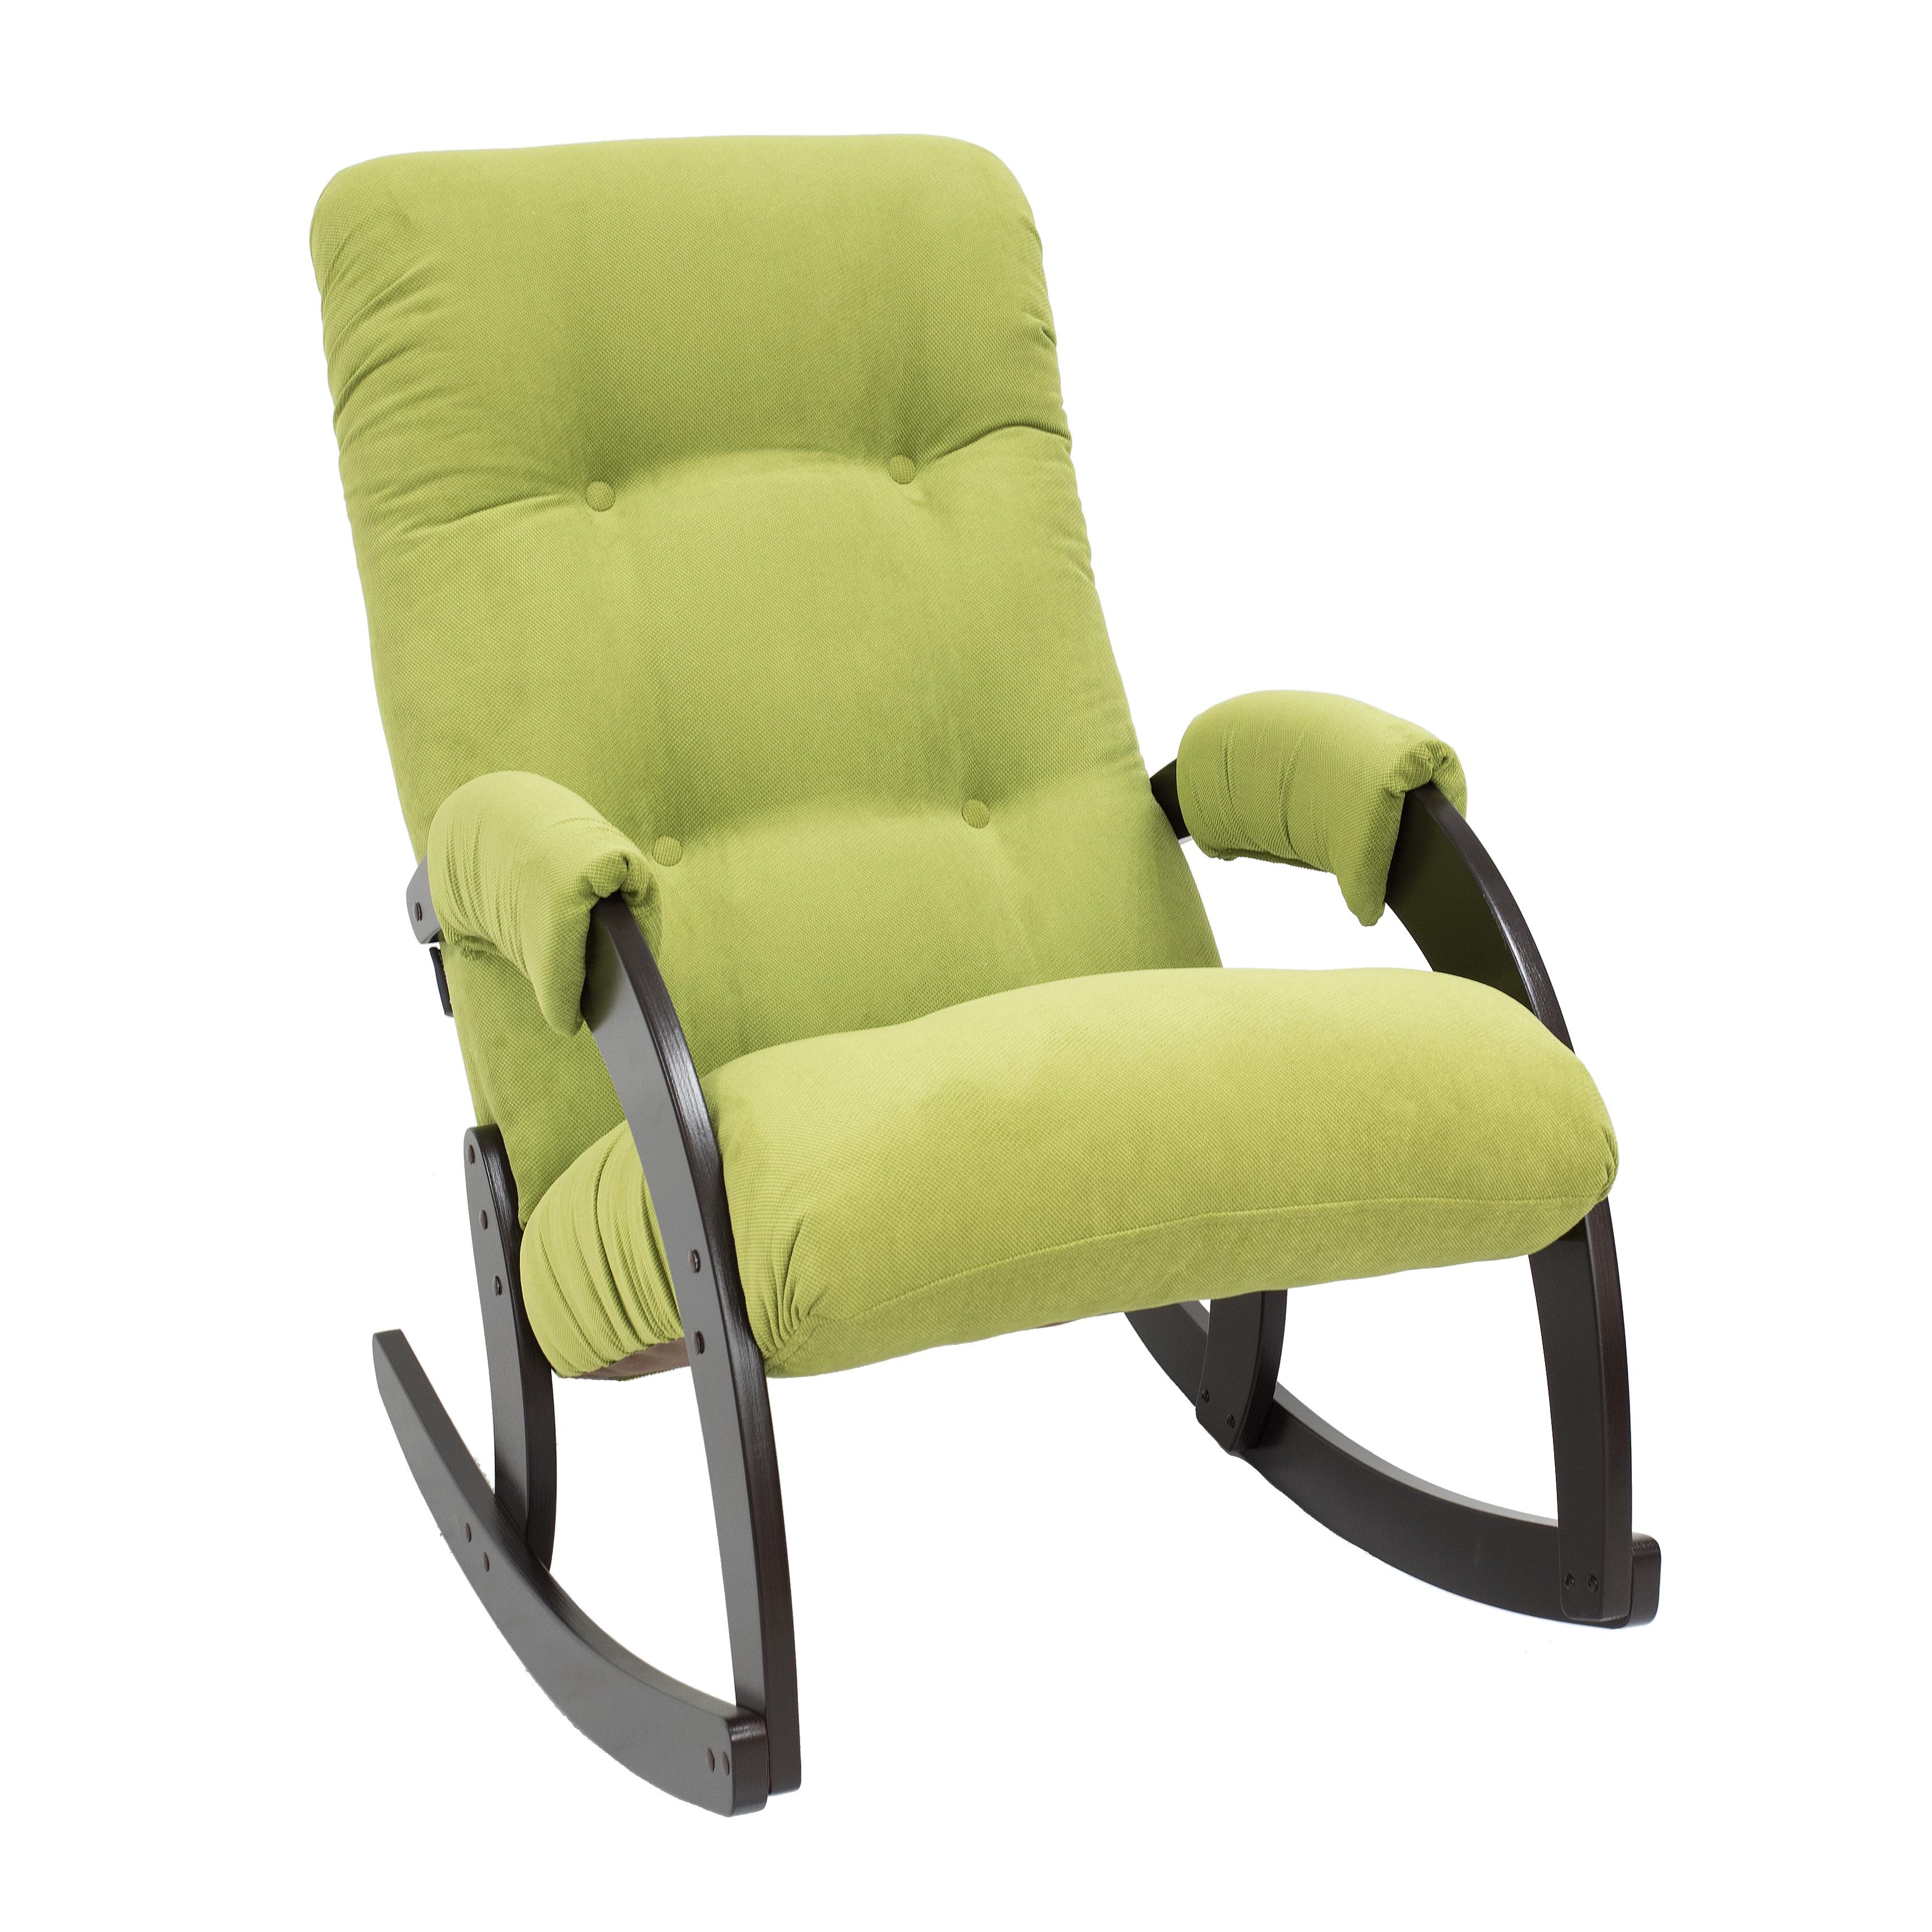 Кресло-качалка verona комфорт зеленый 60x87x103 см.